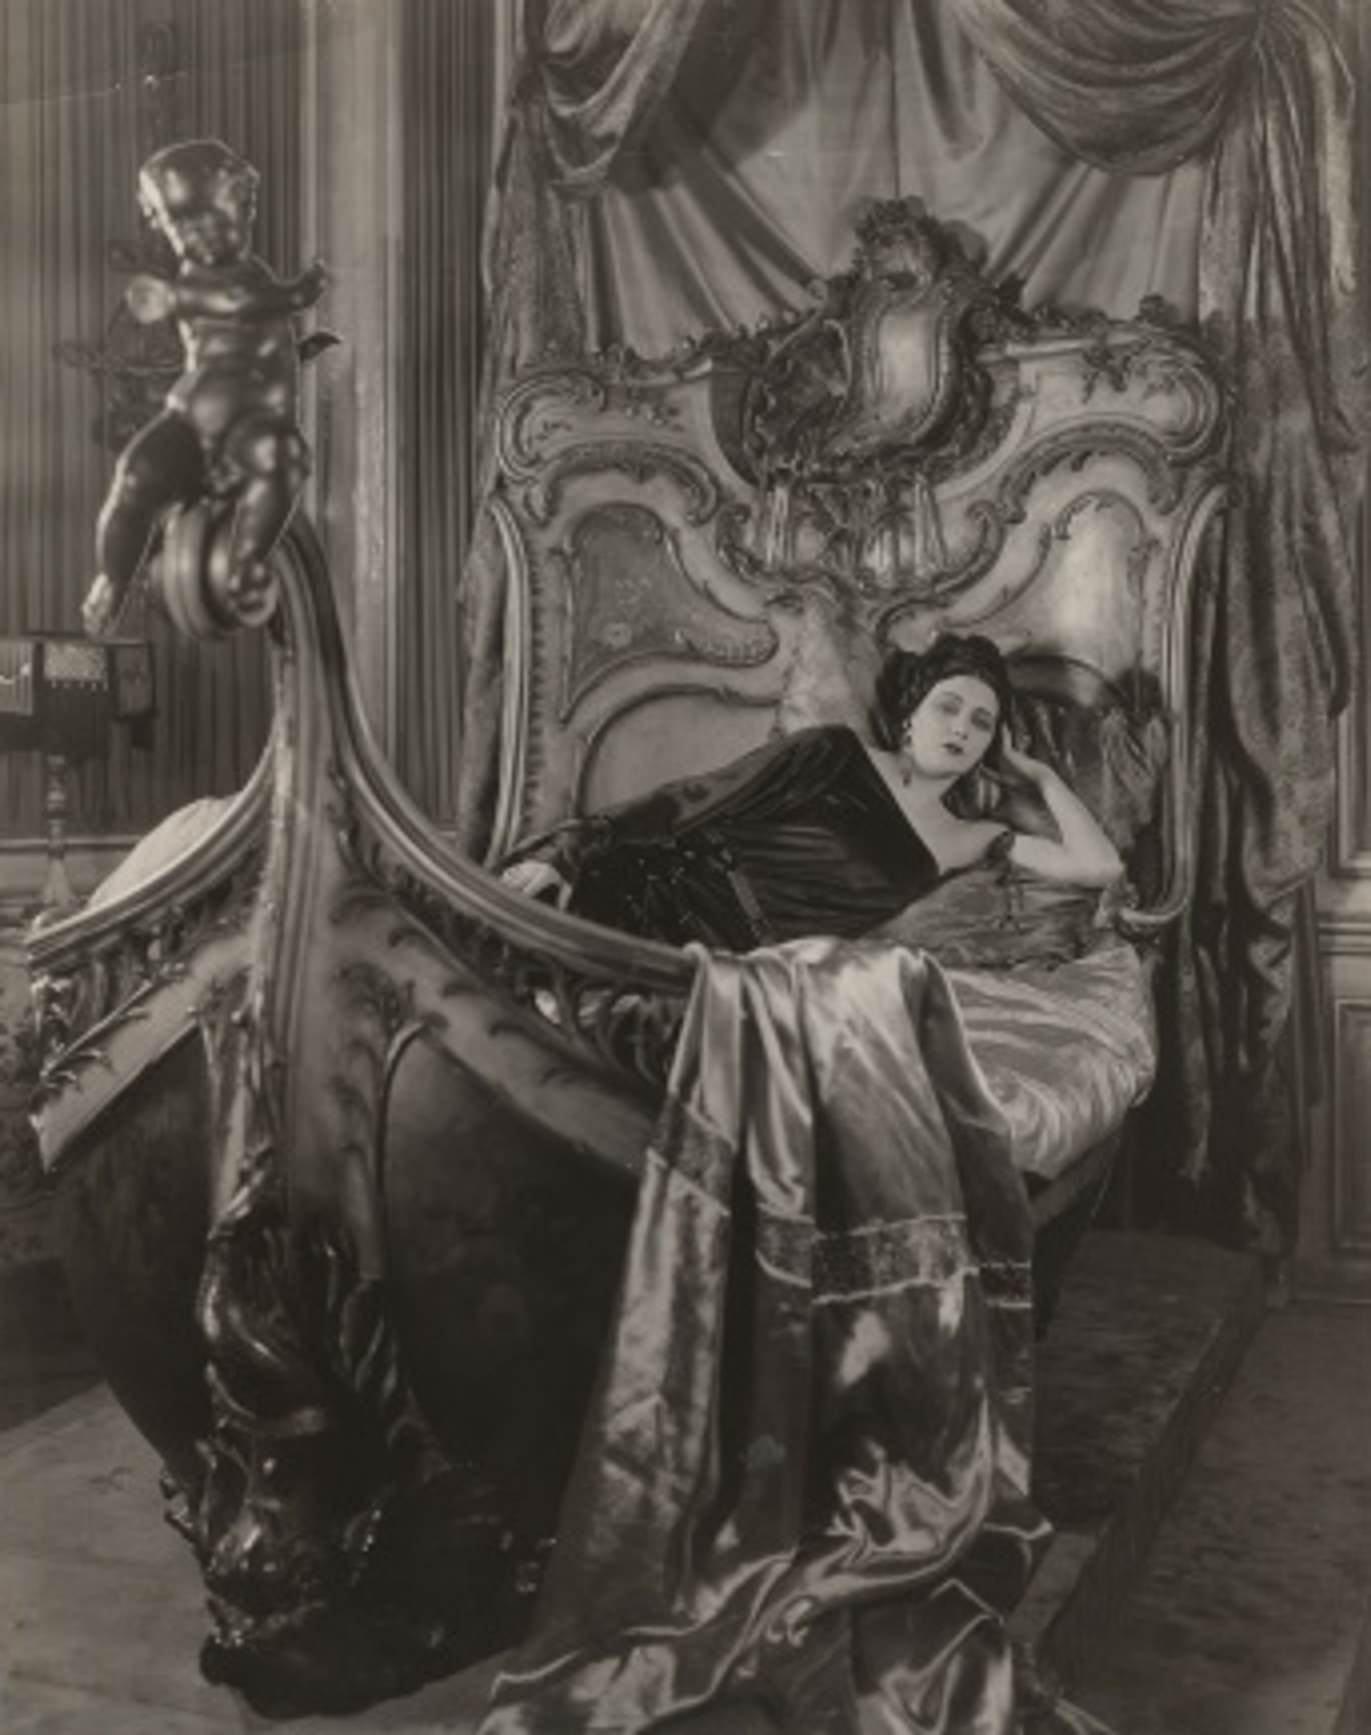 Barbara La Marr in "Trifling Women", 1923